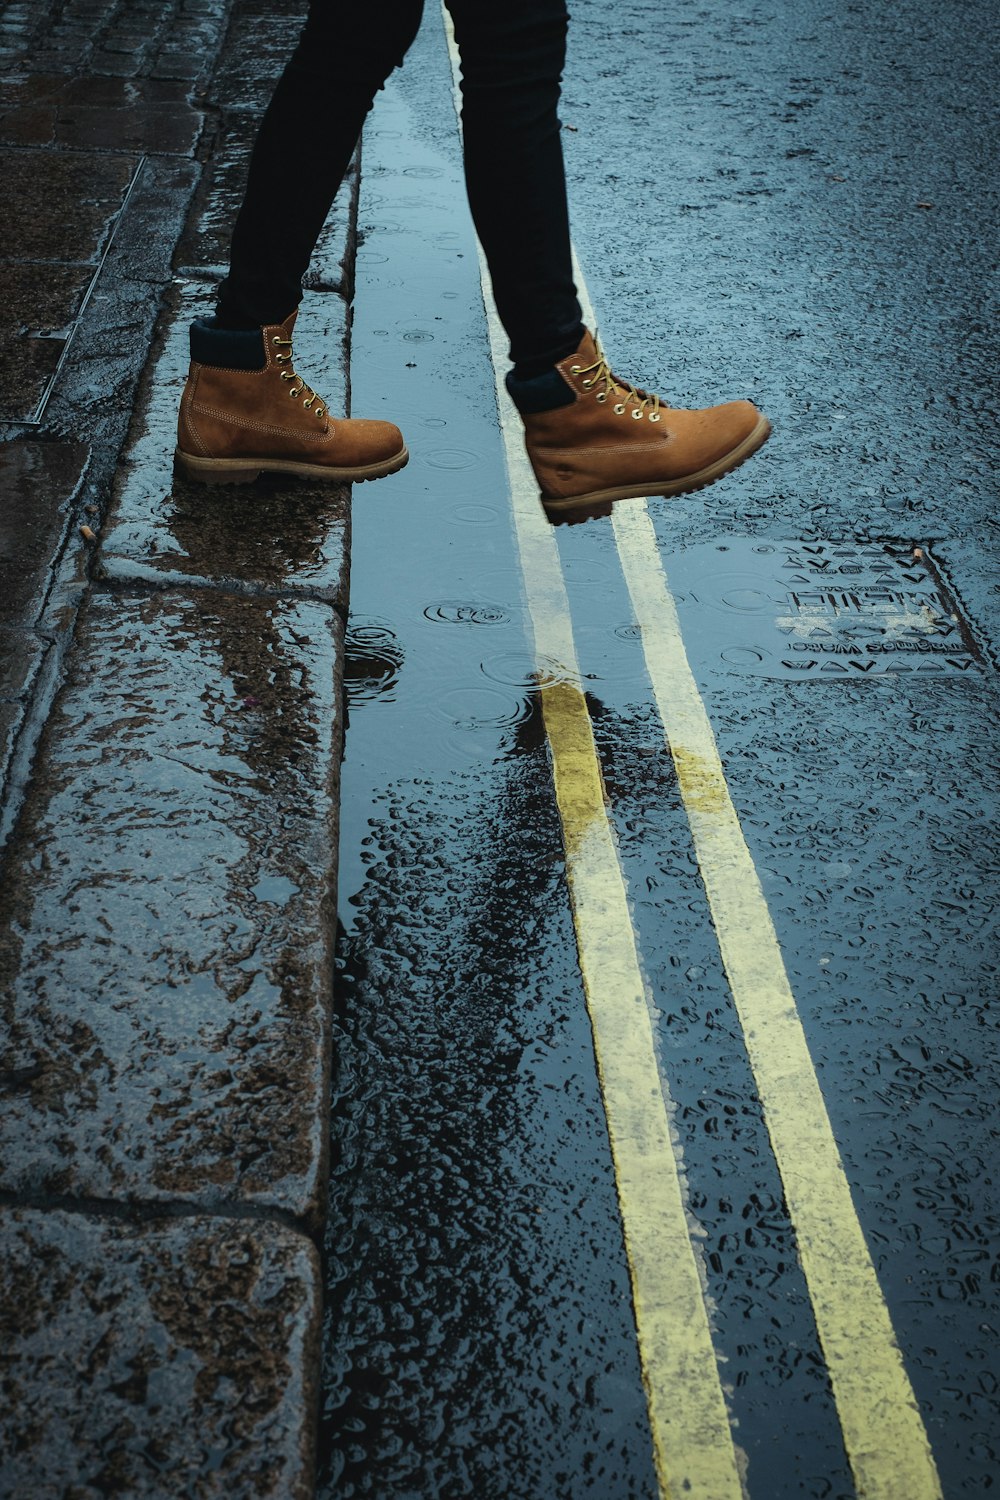 濡れた道を歩く茶色のブーツを履いた人